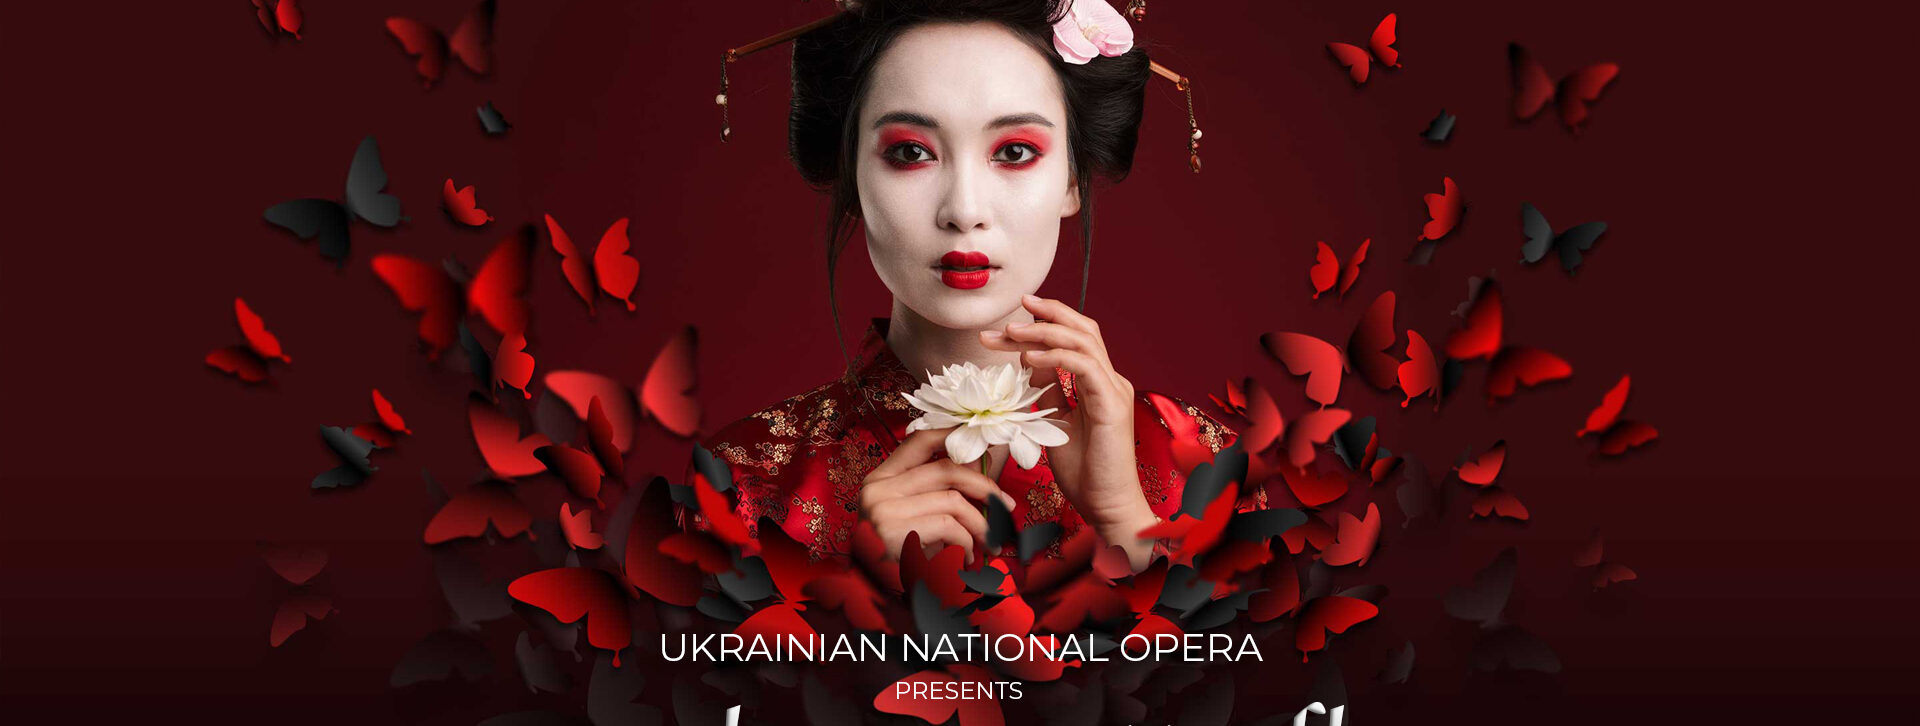 Madama Butterfly by Ukrainian National Opera